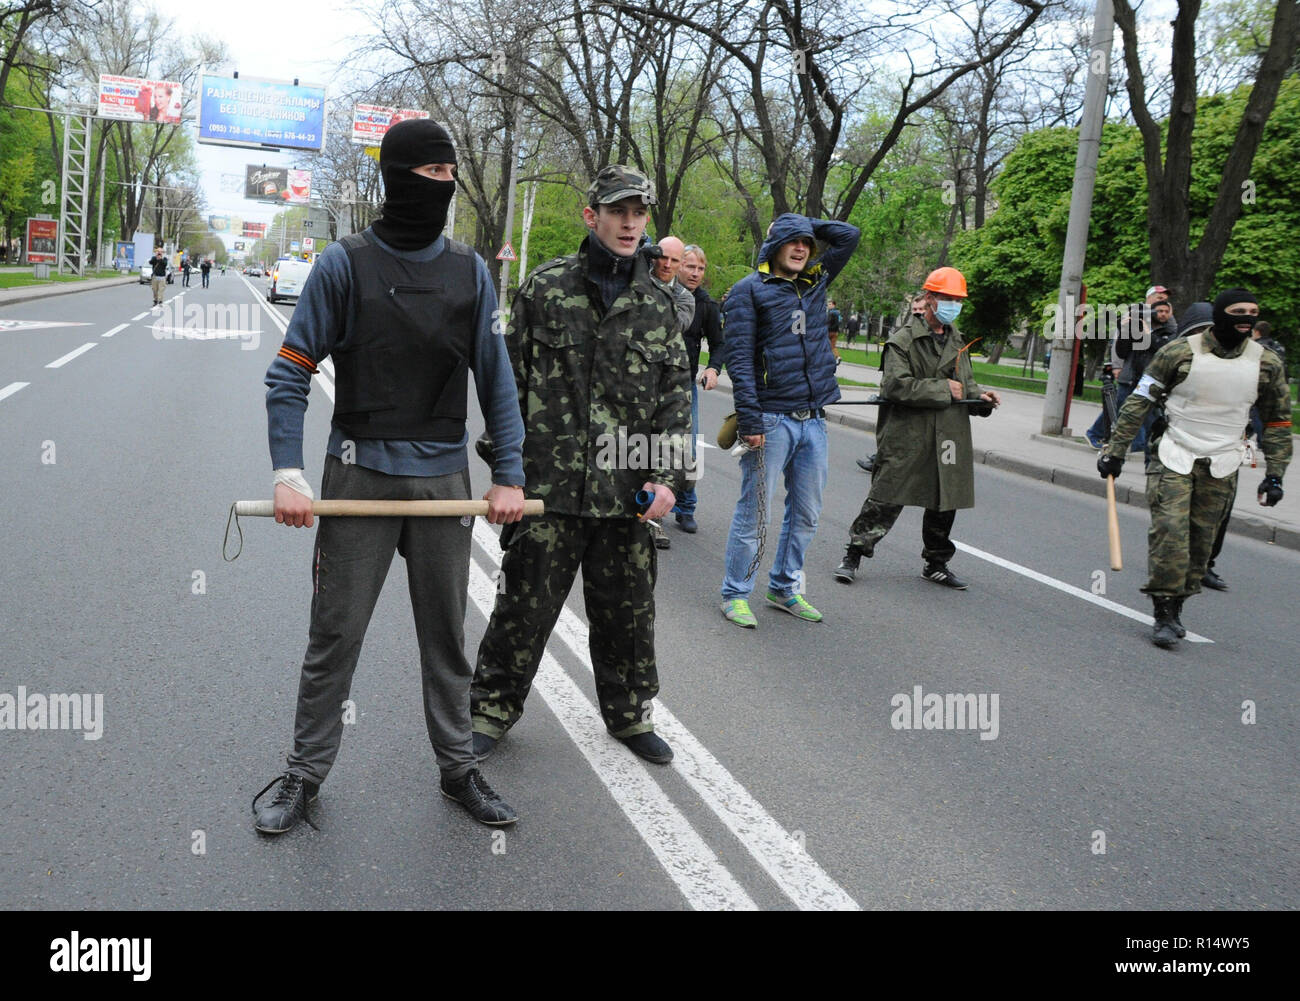 April 28, 2014 - Donezk, Ukraine: Pro-Russia militanten Ukrainer angriff, die friedlich für die Erhaltung der Einheit ihres Landes demonstriert. Die pro-russische separatistische Gruppe, meist Jugendliche in Balaclava, dann feierten ihren Aktionen durch schreien Sie hatten zertrümmerte 'Faschisten'. Une Manifestation pacifique en faveur de l'unite de l'Ukraine Donetsk est brutalement dispersee Gleichheit des Gruppen separatistes pro-Russes armes de Schlagstöcke et, schneckaufkommen Gießen, d'armes blanches et de pistolets. Il s'agit de La Derniere vorläufige des Partisanen de l'unite ukrainienne de Entweihten dans les rues. La Stockfoto